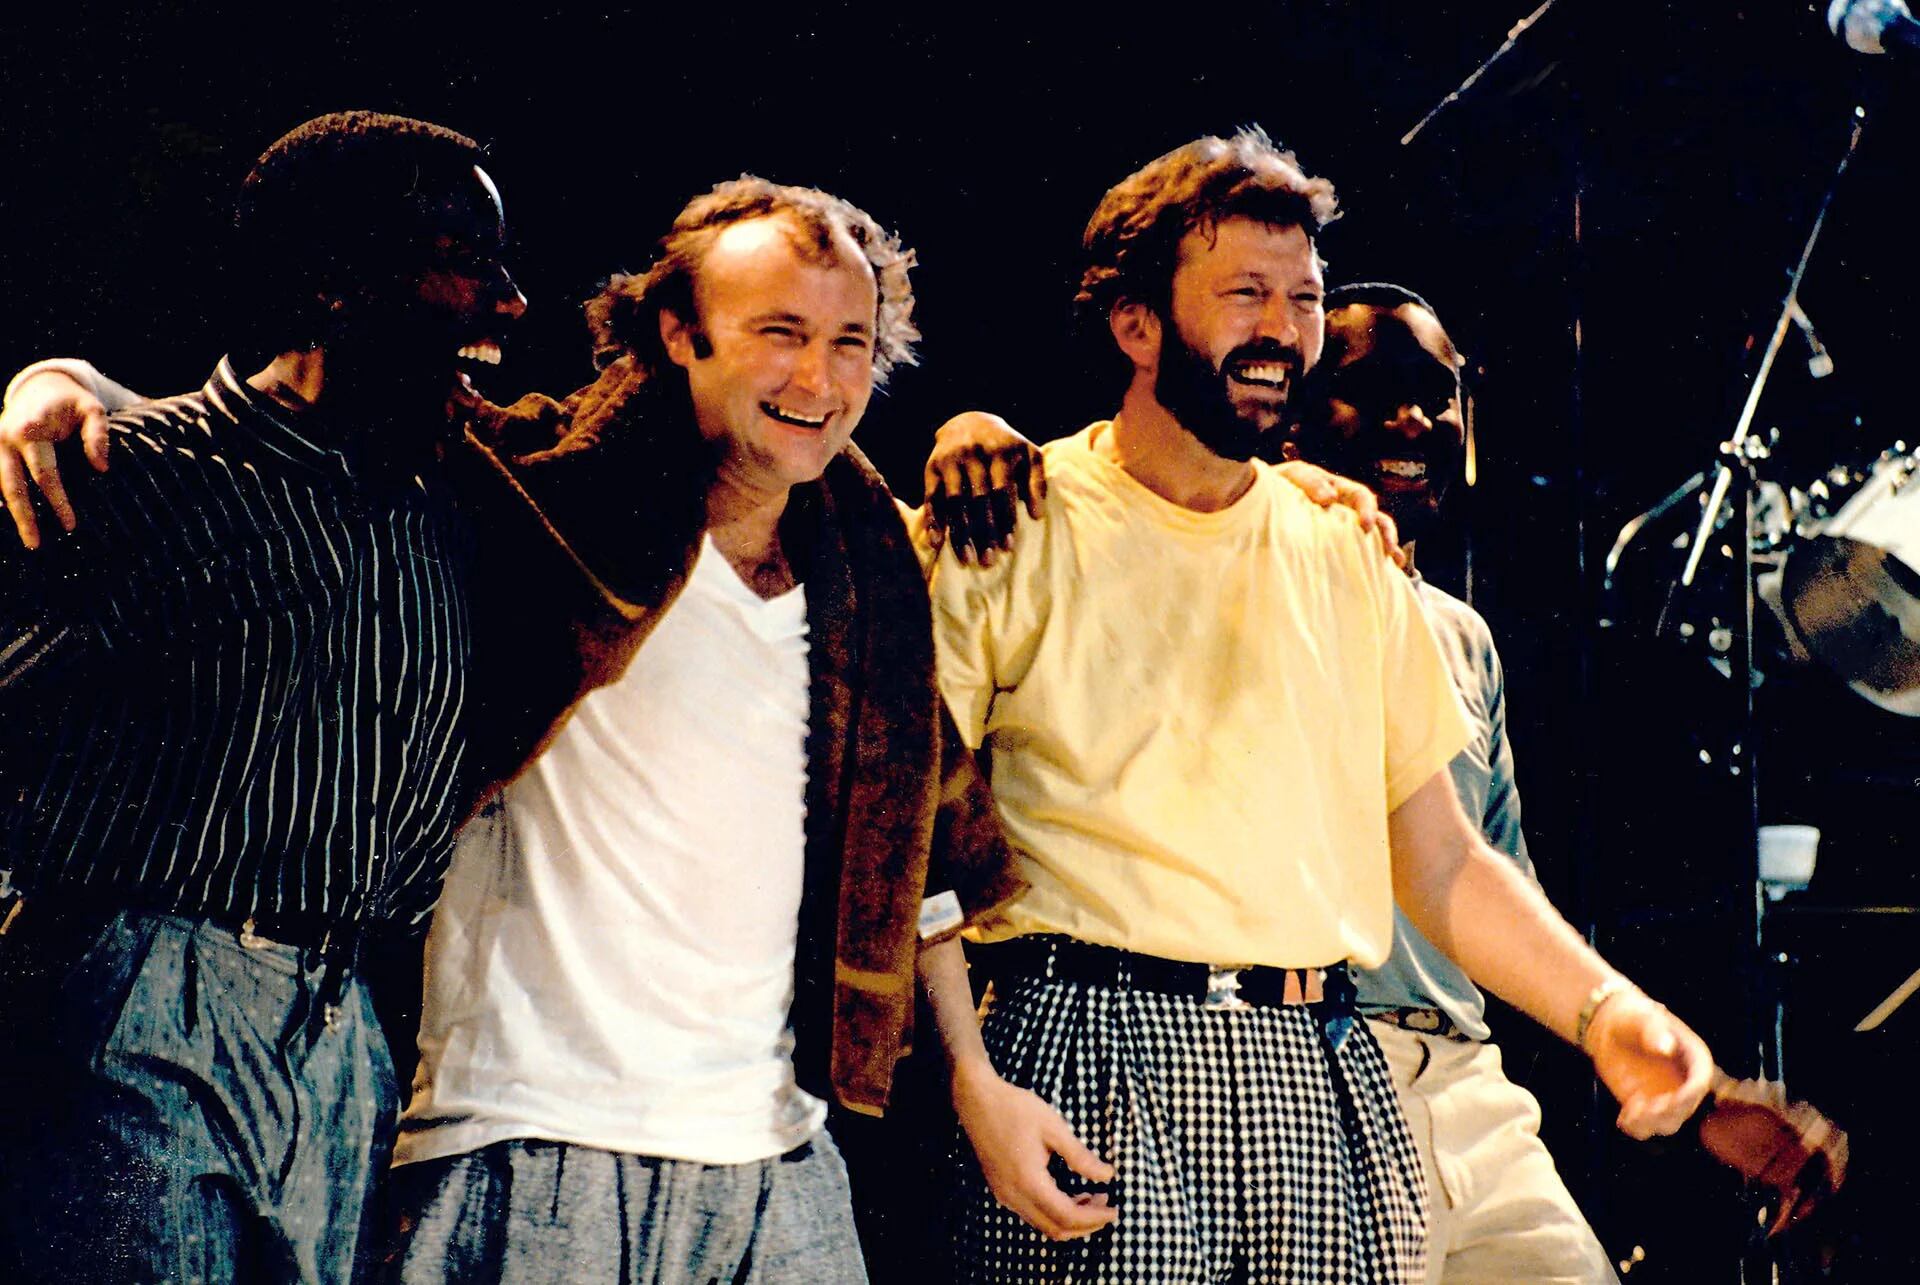 Phil Collins terminó su show en Wembley y tomó un avión supersónico para estar en Filadelfia en menos de tres horas y tocar con Eric Clapton y Led Zeppelin, siendo el único músico que tocó en ambos escenarios